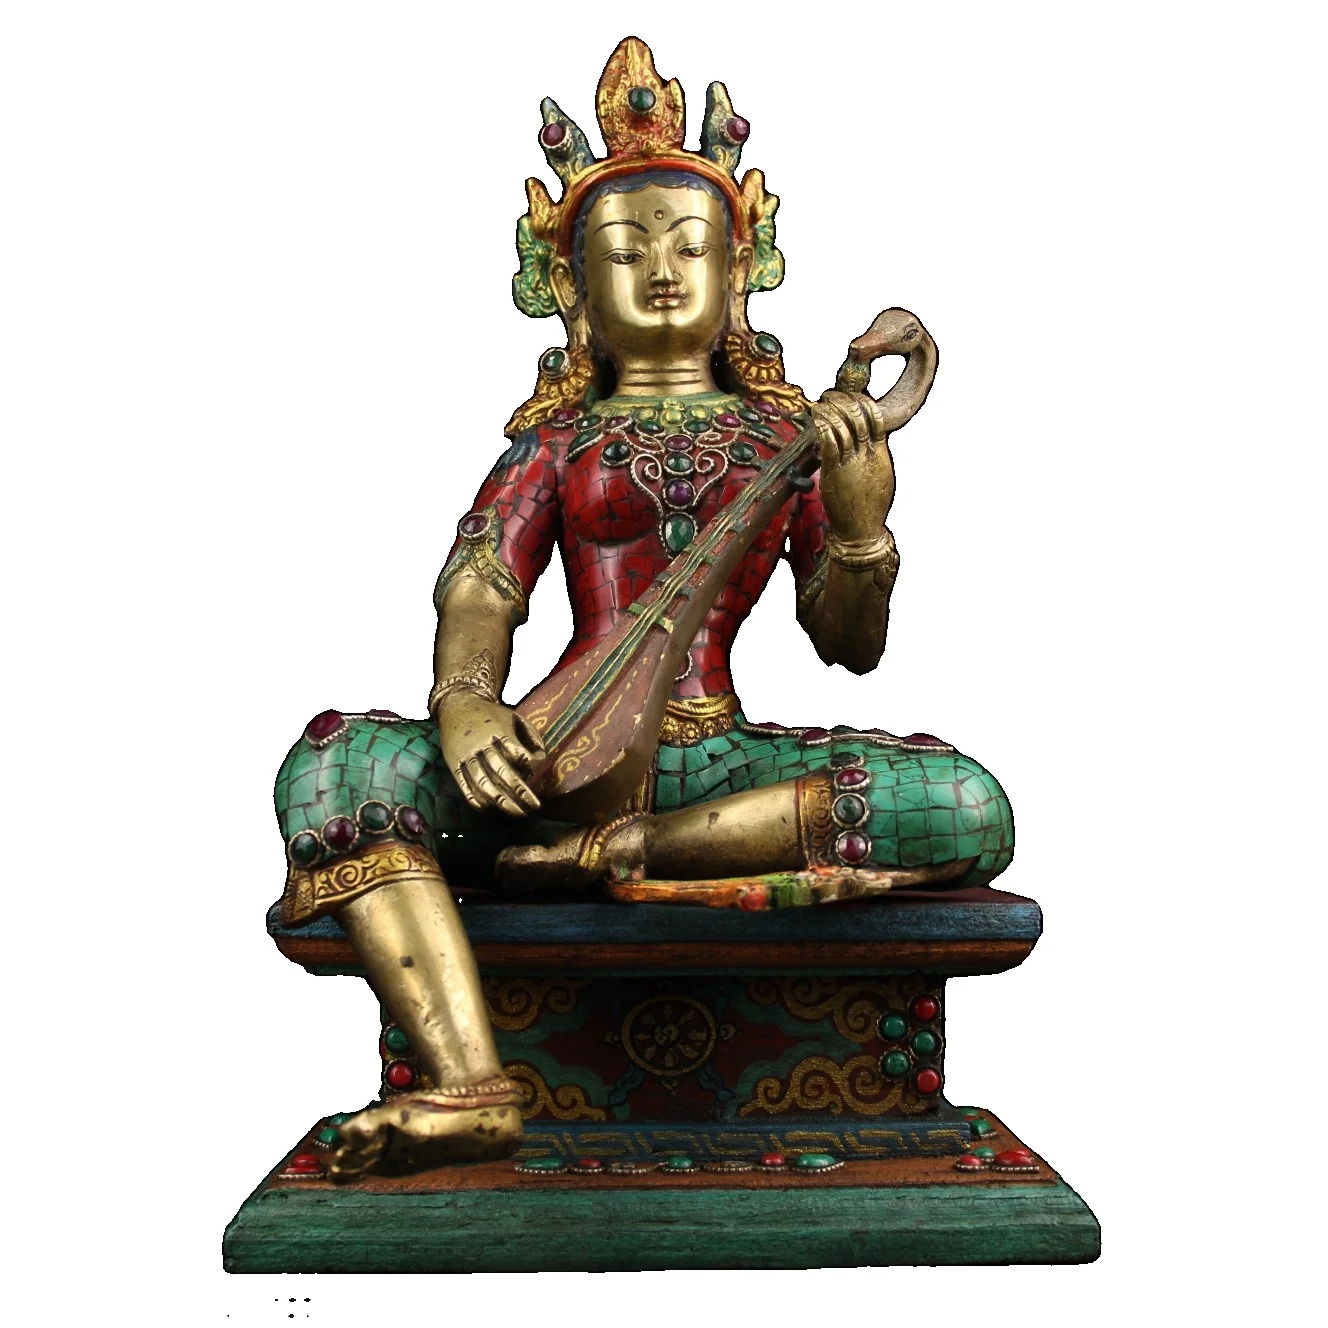 

Laojunlu старый Тибетский монастырь коллекция чистой бронзы и драгоценных камней окрашенная и позолоченная статуя Myojin